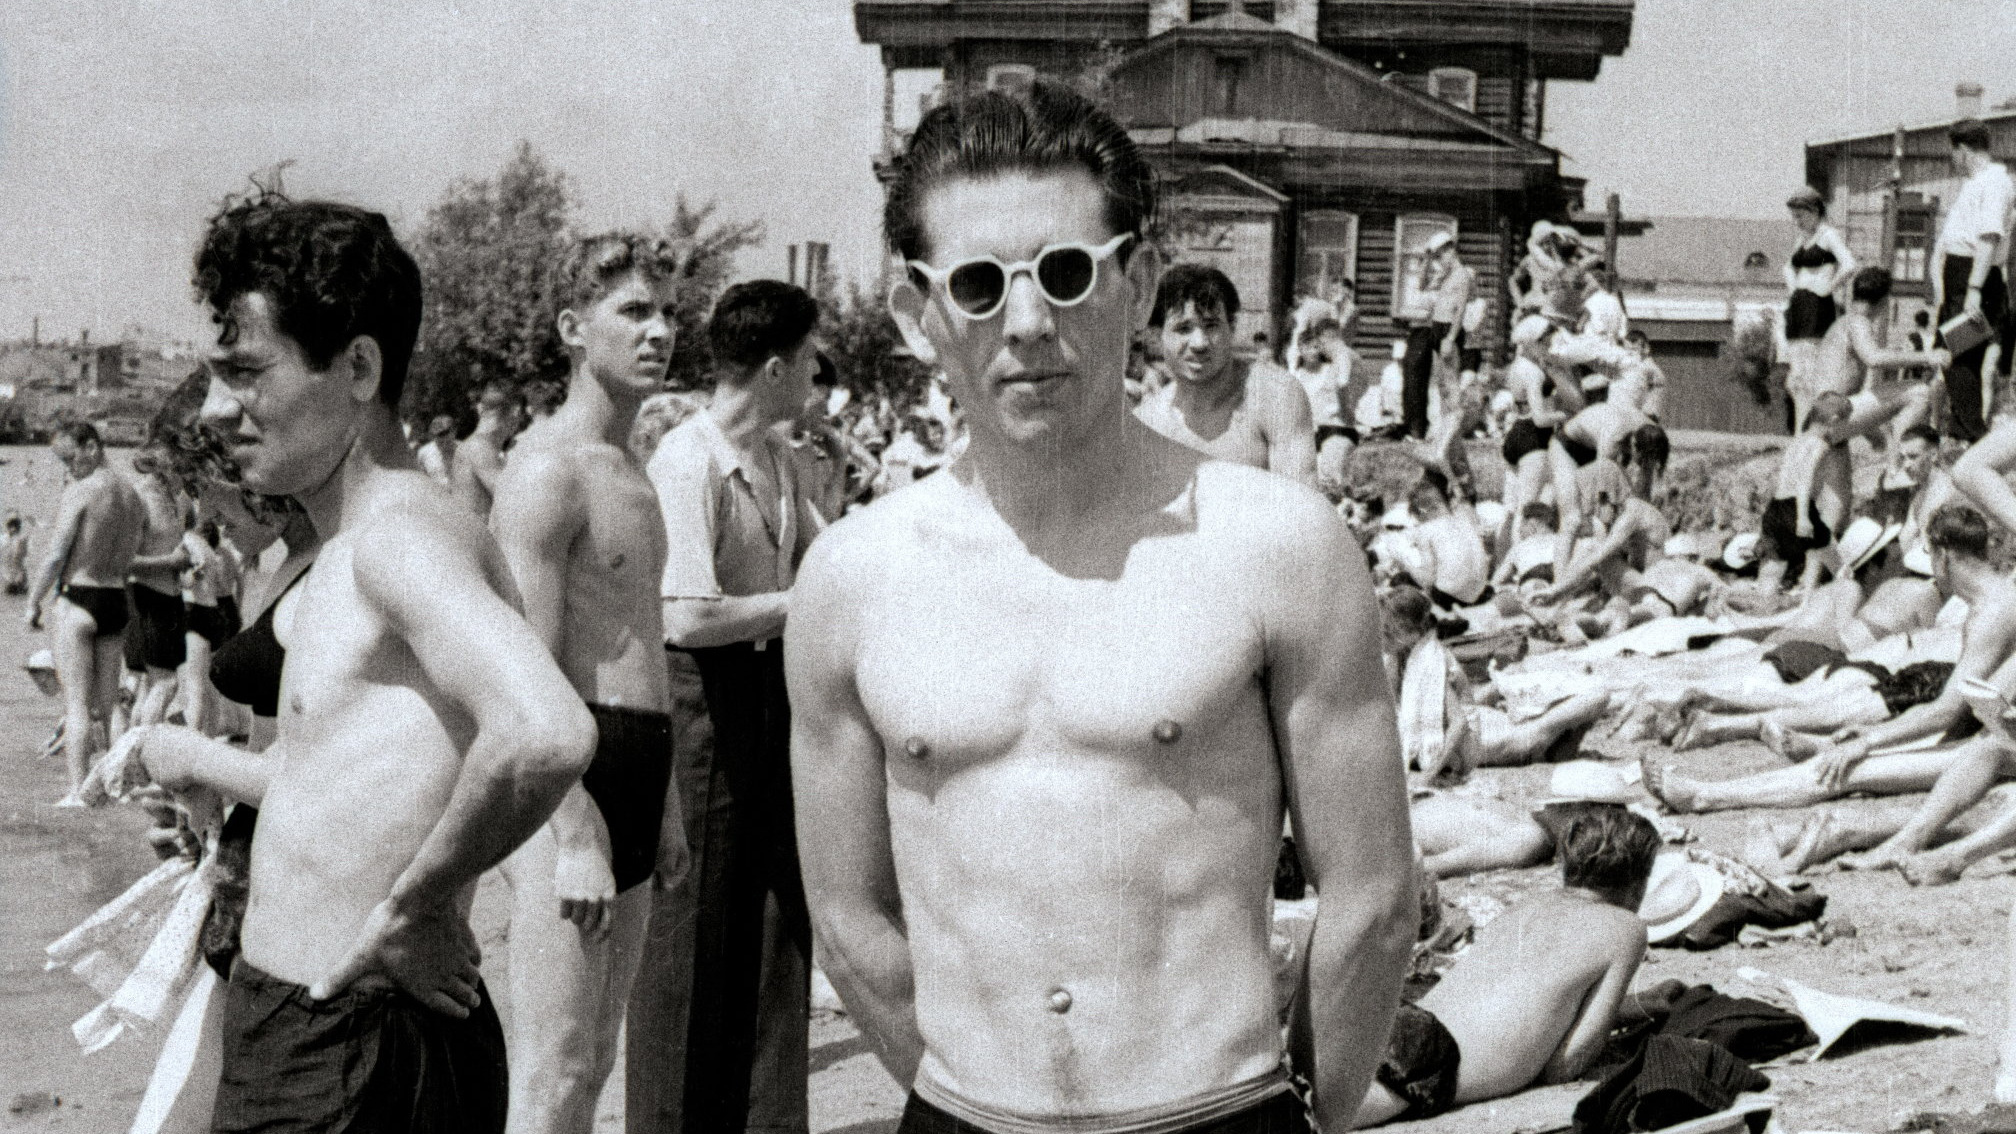 Пляжи из прошлого: как омичи отдыхали в жару в советские годы — рассматриваем архивные фото